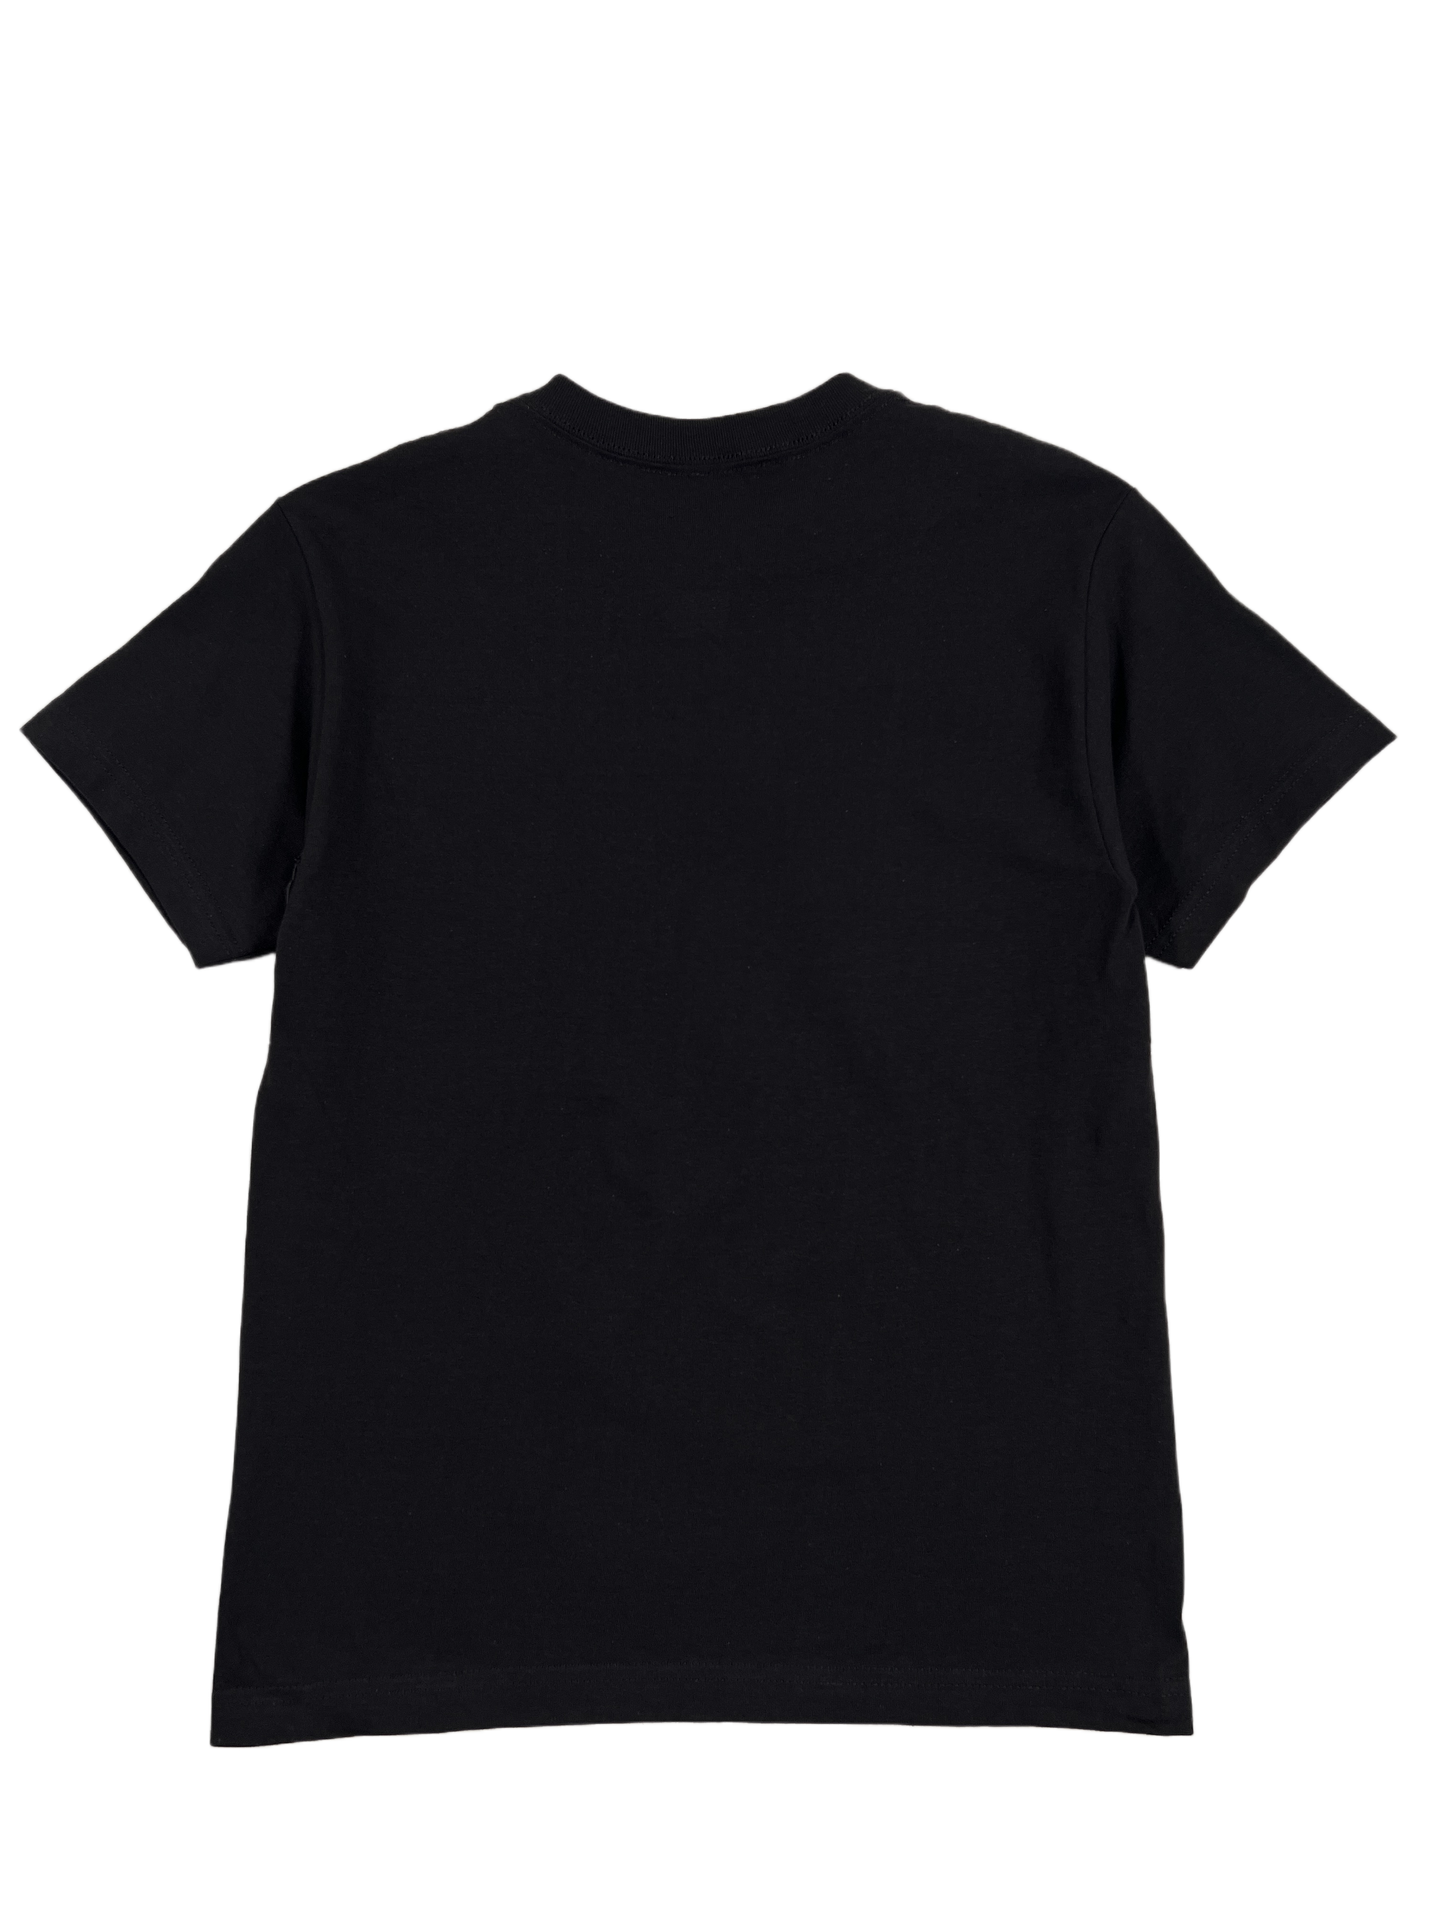 A PLEASURES black cotton t-shirt on a black background.